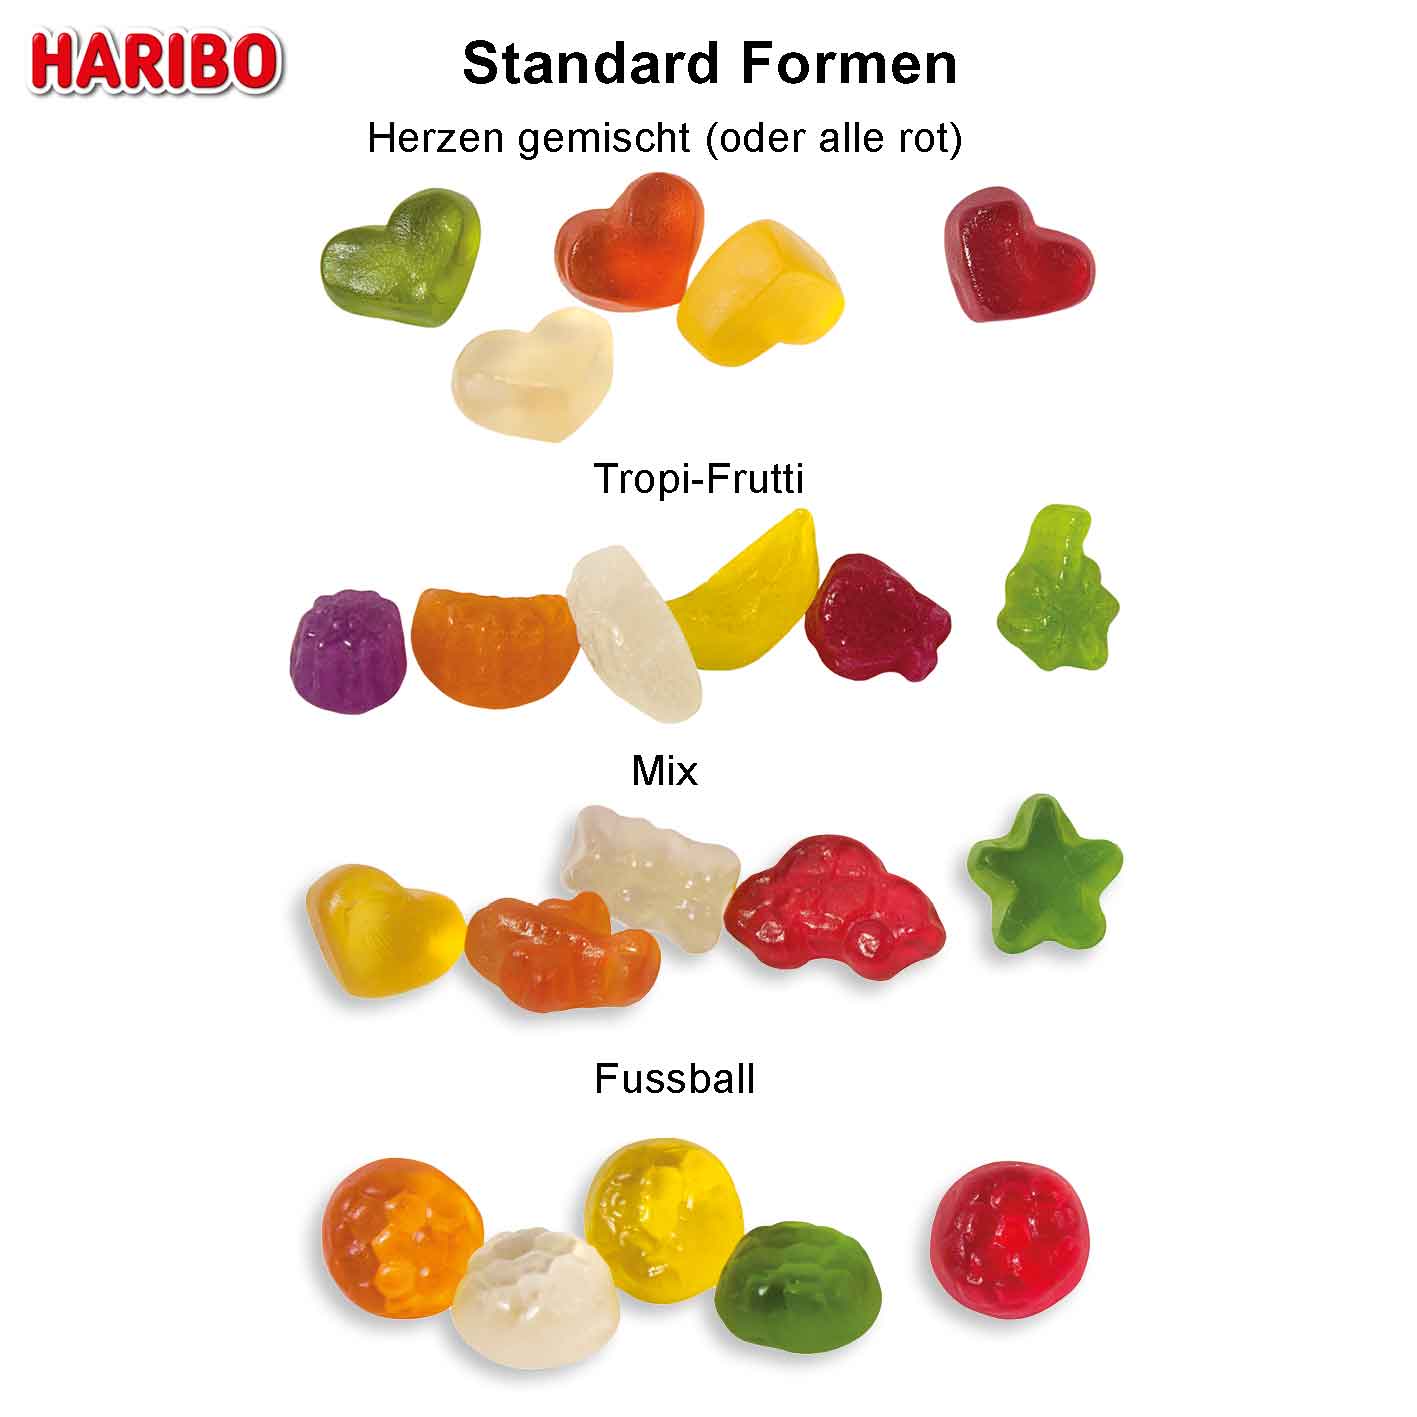 Standardformen Haribo